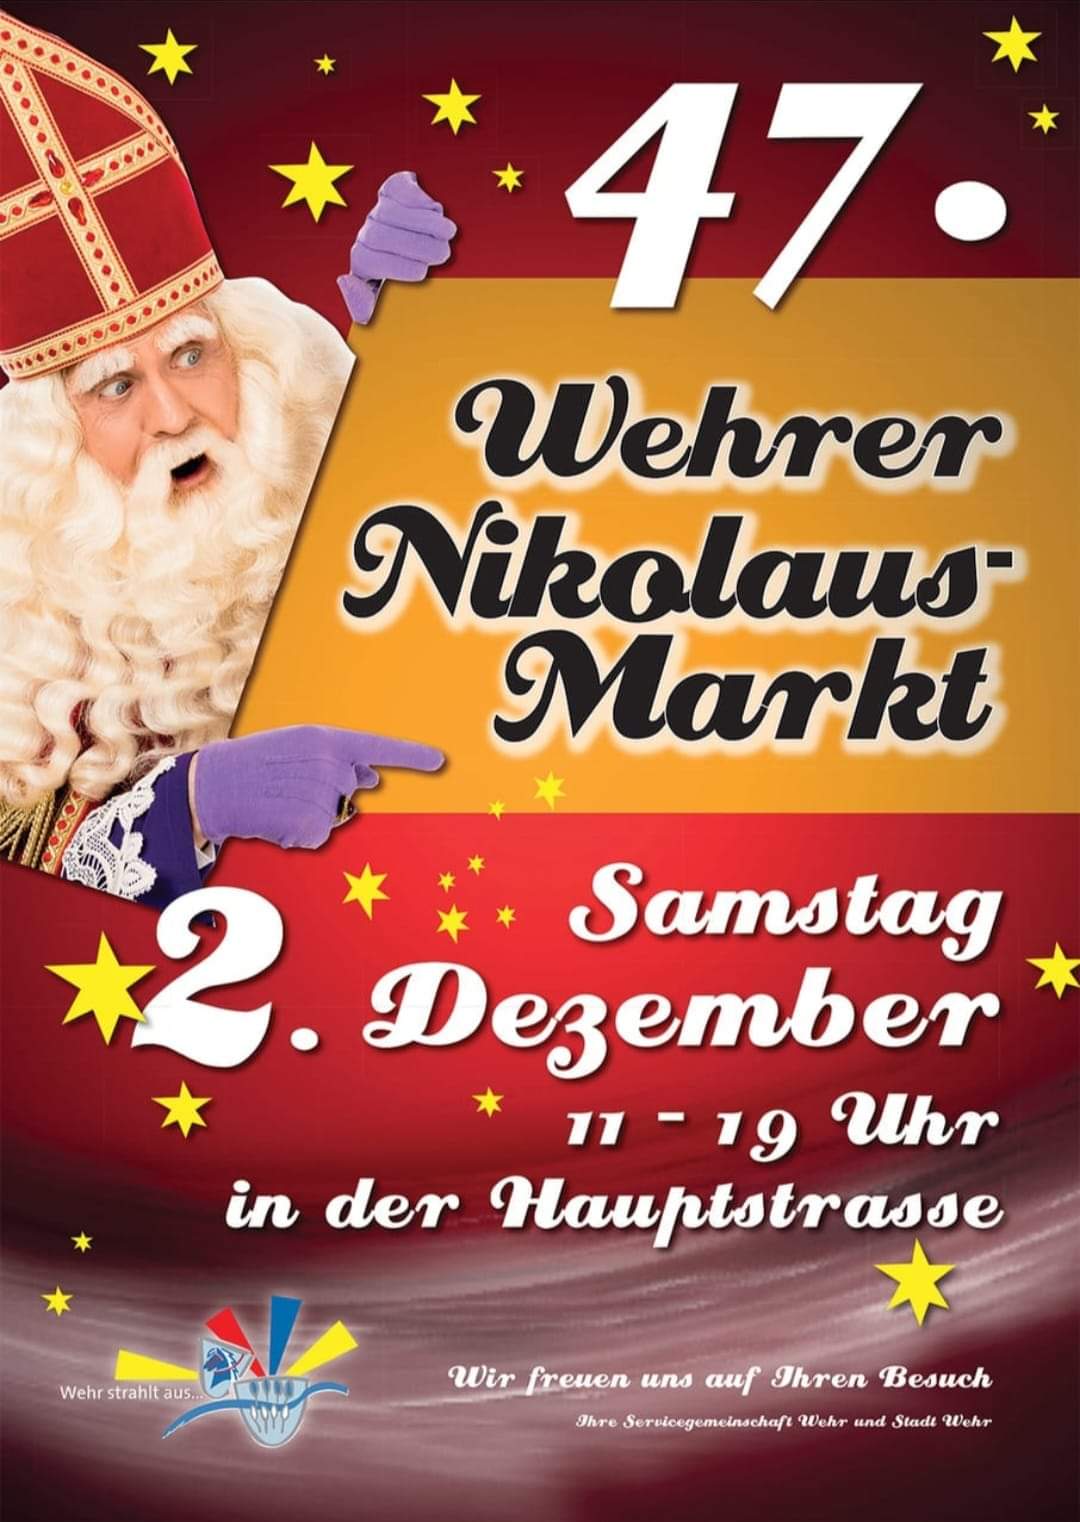 Wehrer
                  Nikolausmarkt